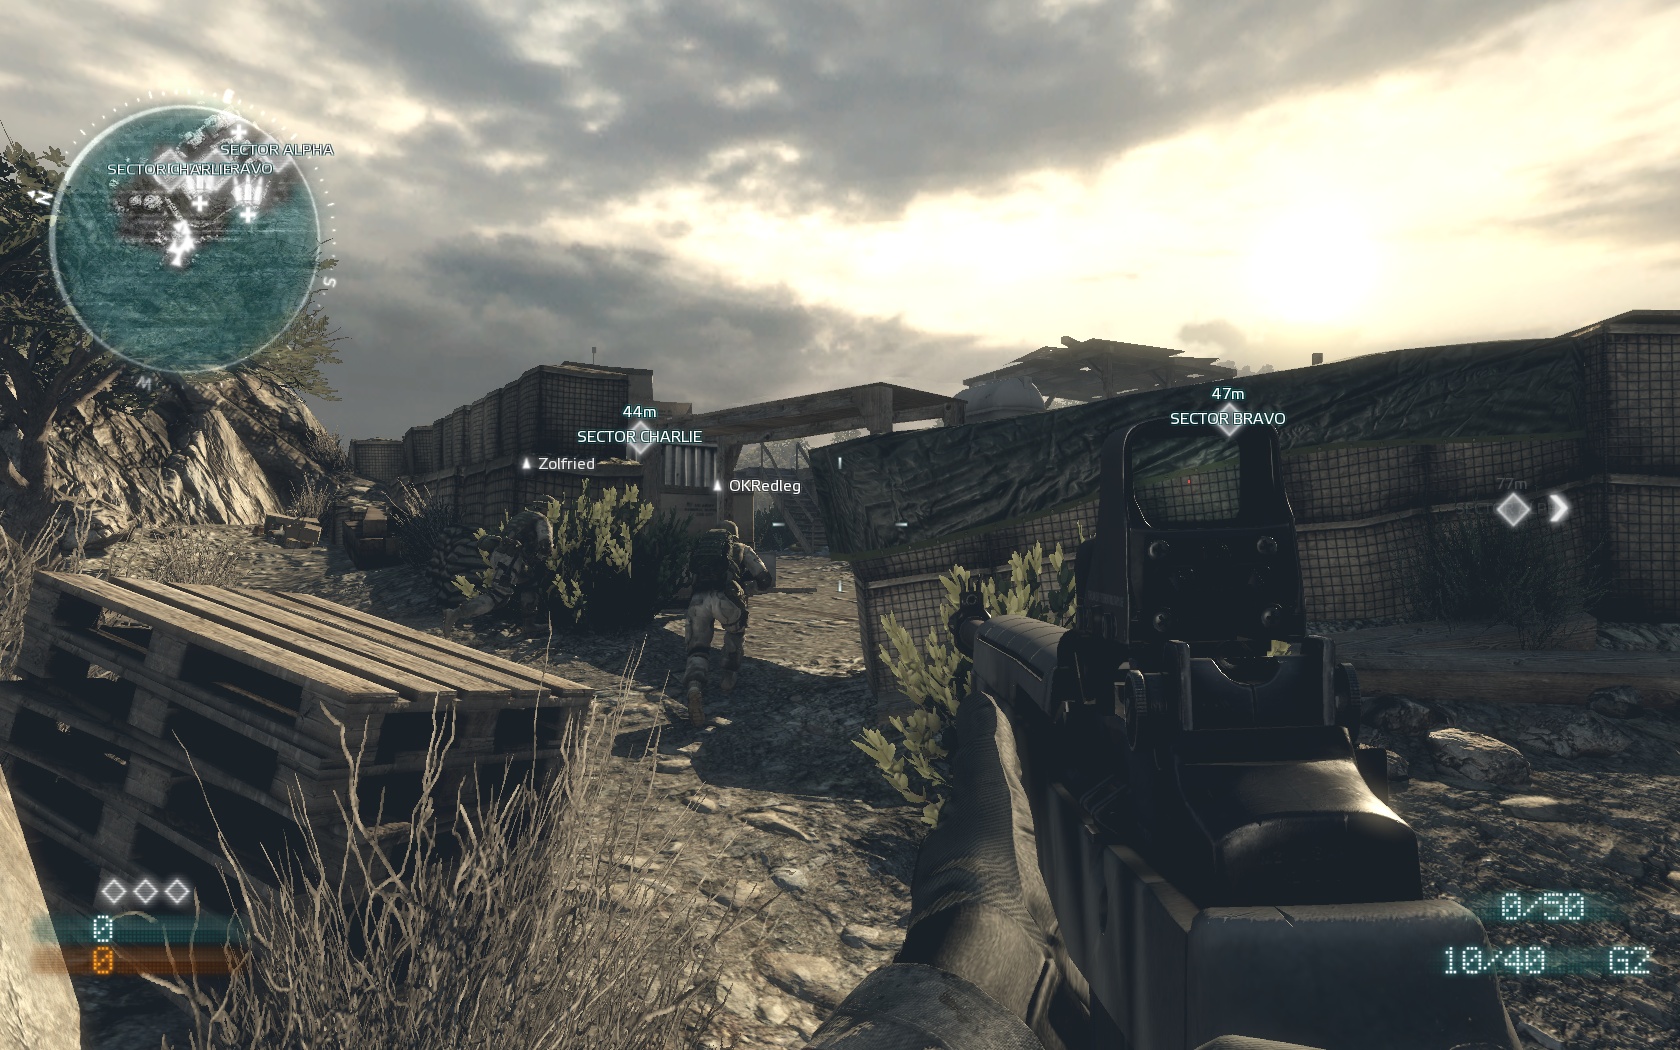 Medal of Honor Multiplayer od DICE m ancu prerazi.